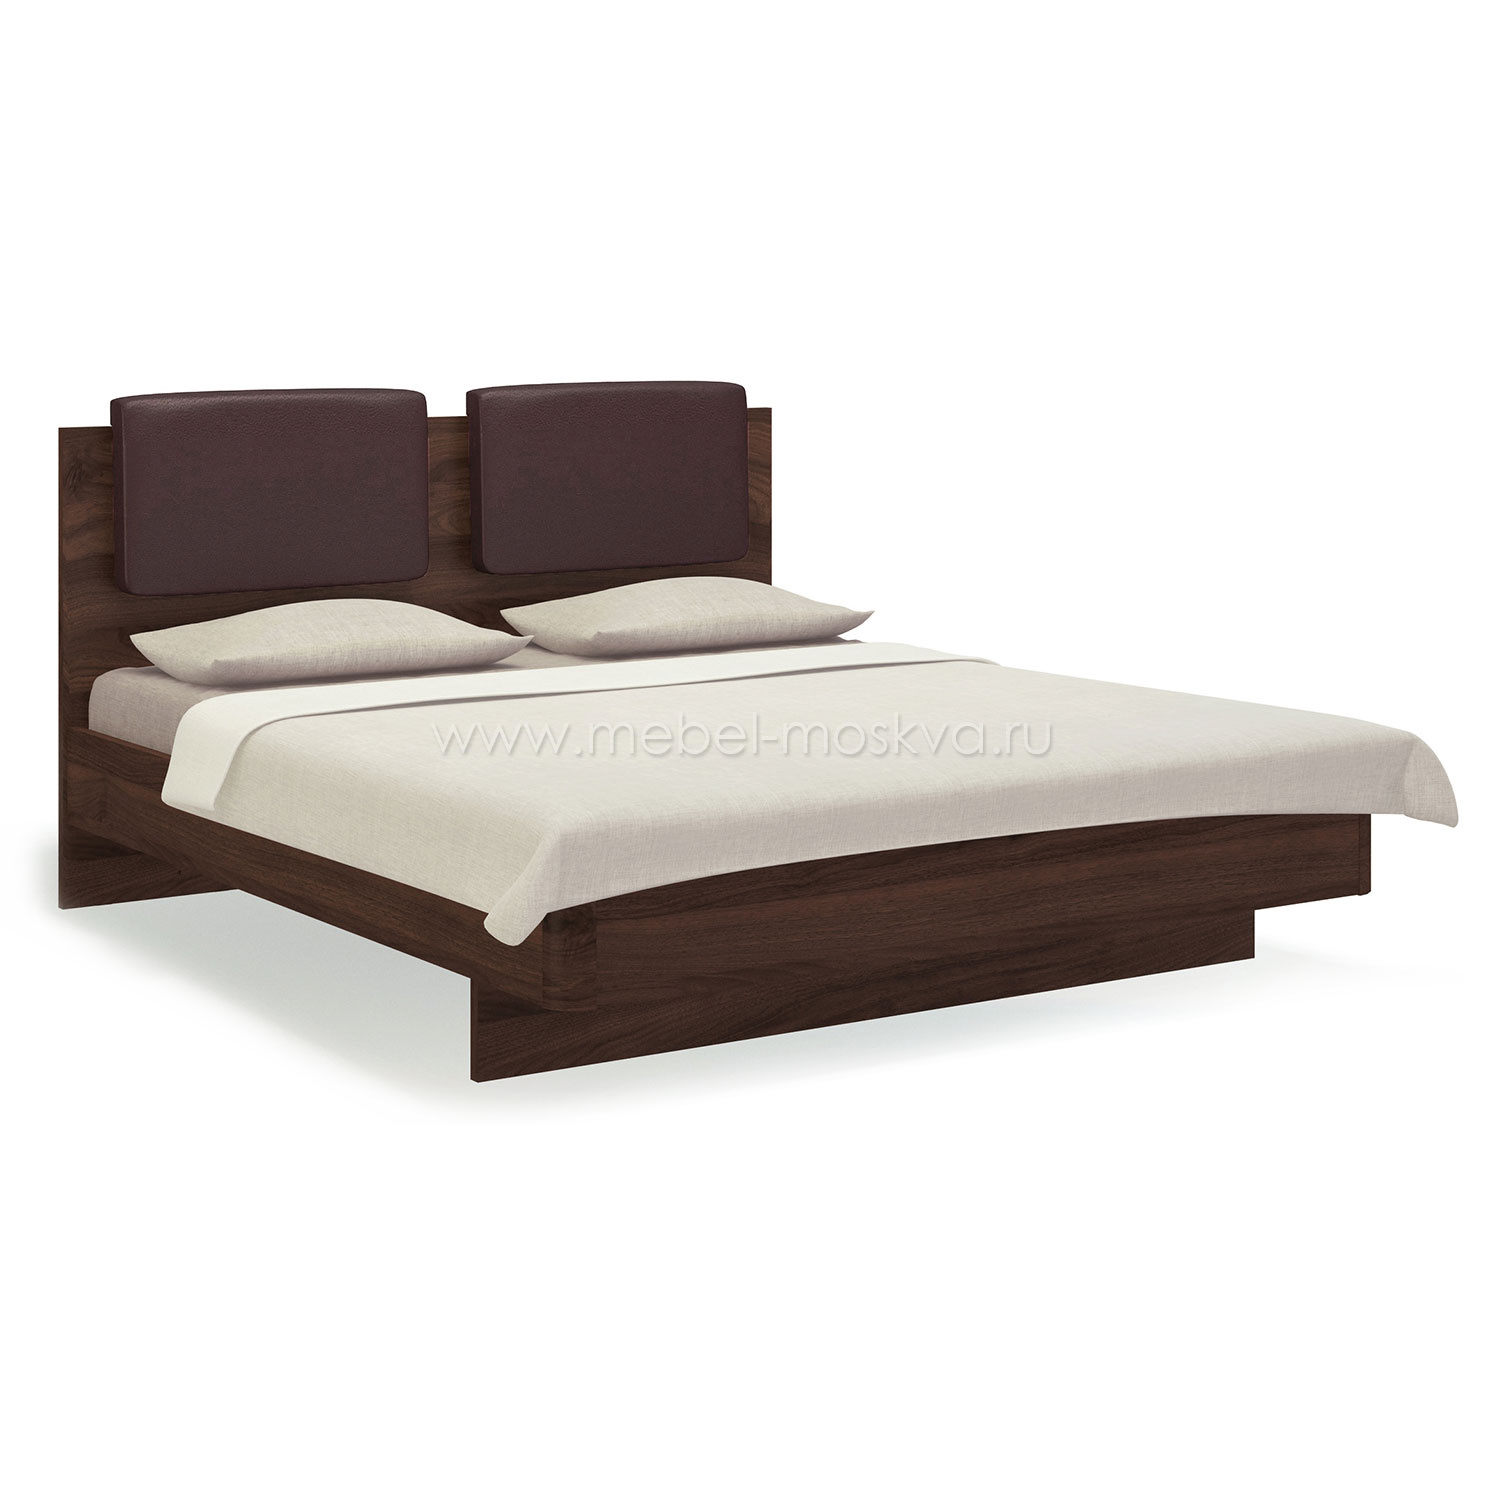 Кровать 160х200 с мягким изголовьем Solo (орех Коламбия/экокожа коричневая)